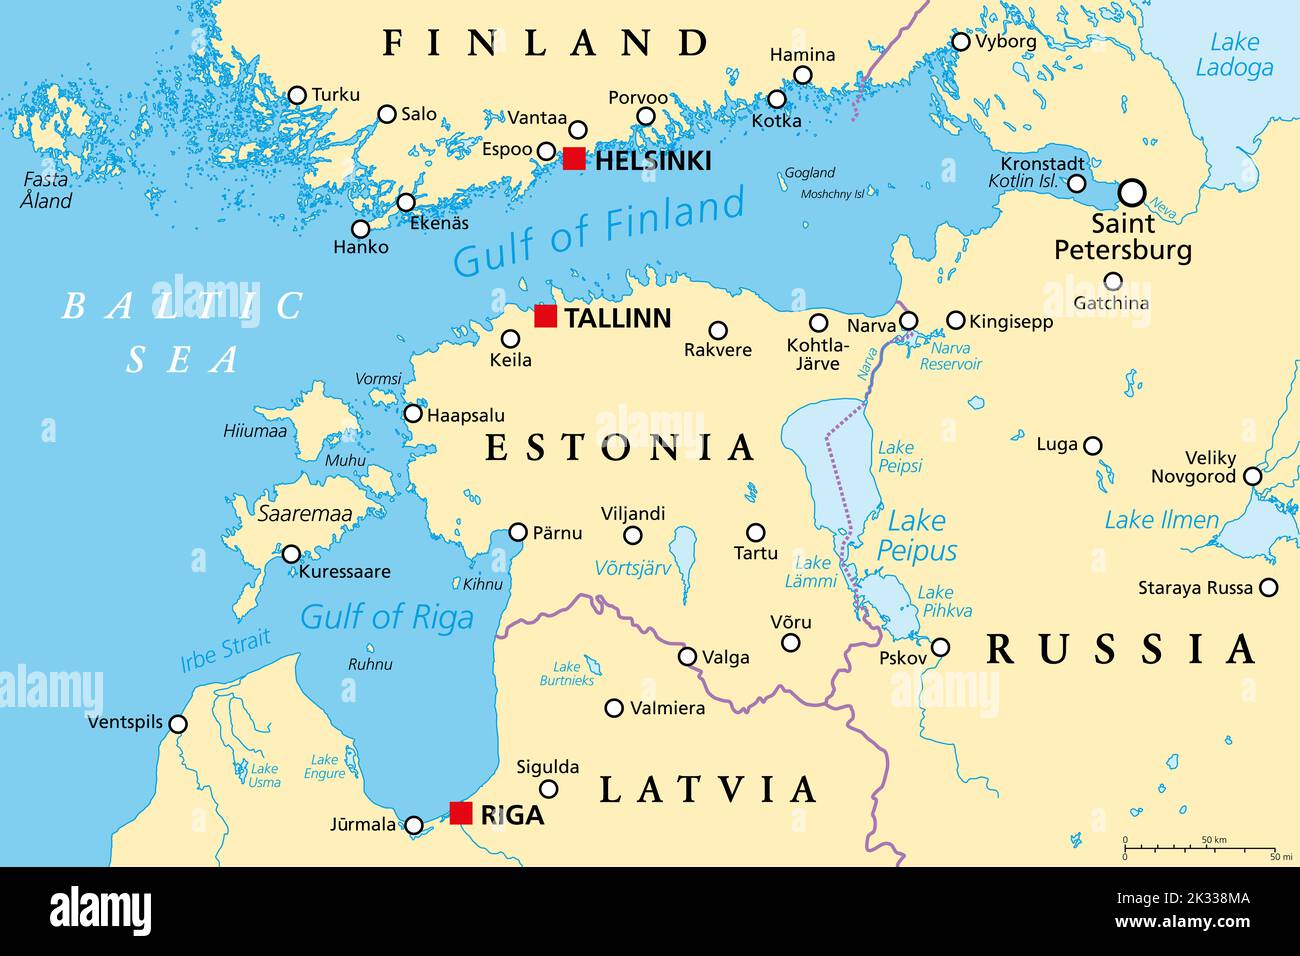 Golfo de Finlandia y región de Riga, mapa político. Países nórdicos Finlandia, Estonia y Letonia, alejan del mar Báltico a San Petersburgo, Rusia. Foto de stock